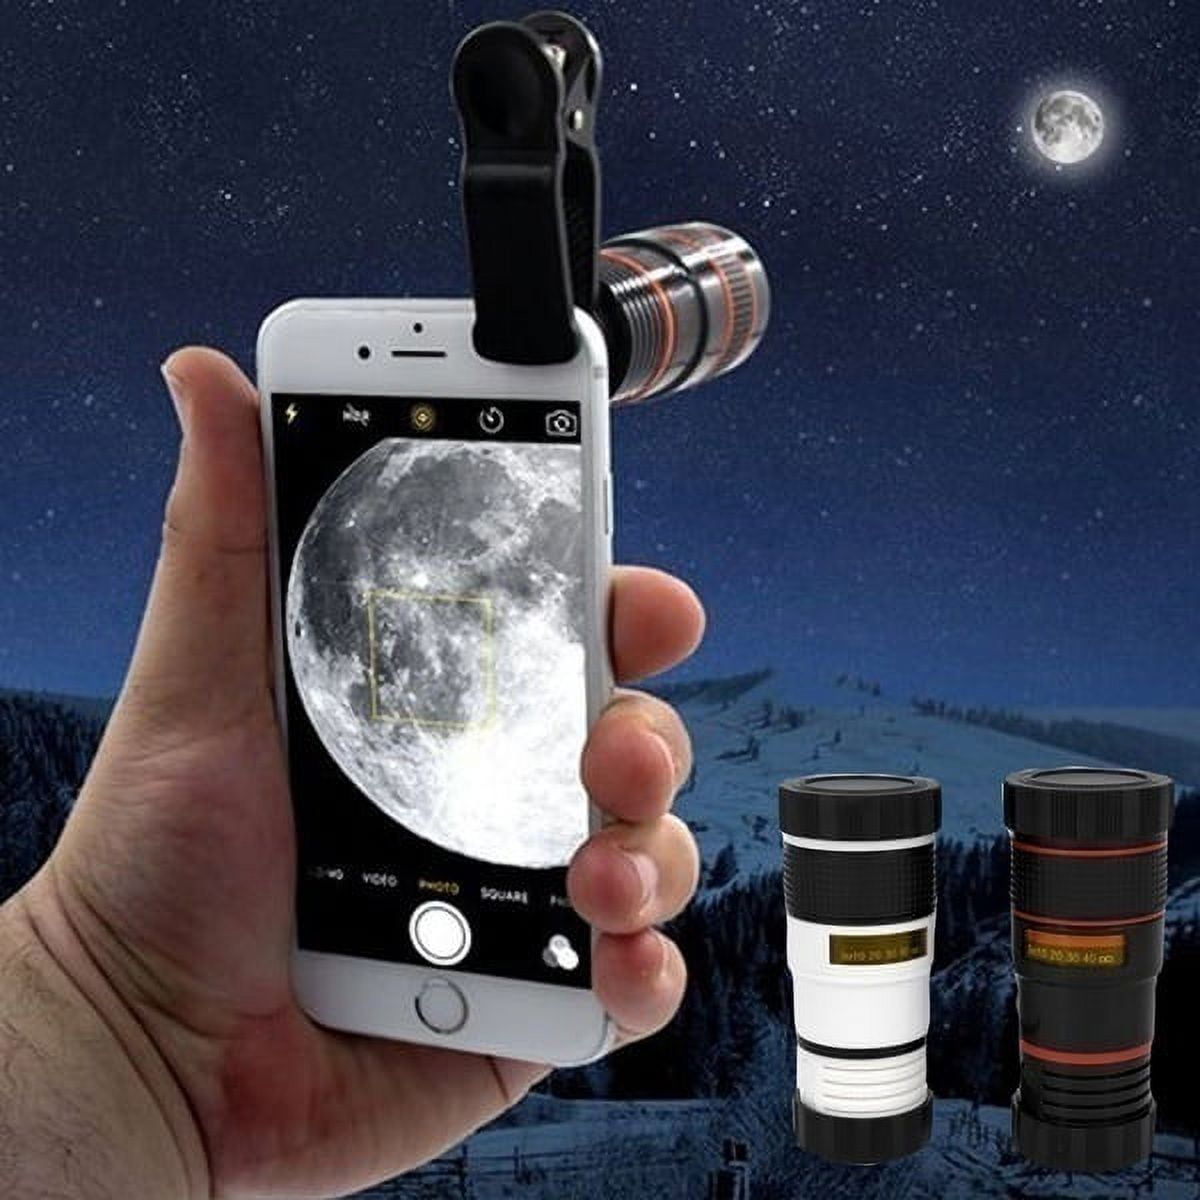 Willstar 8 times Mobile Phone Telescope Universal Telephoto Lens